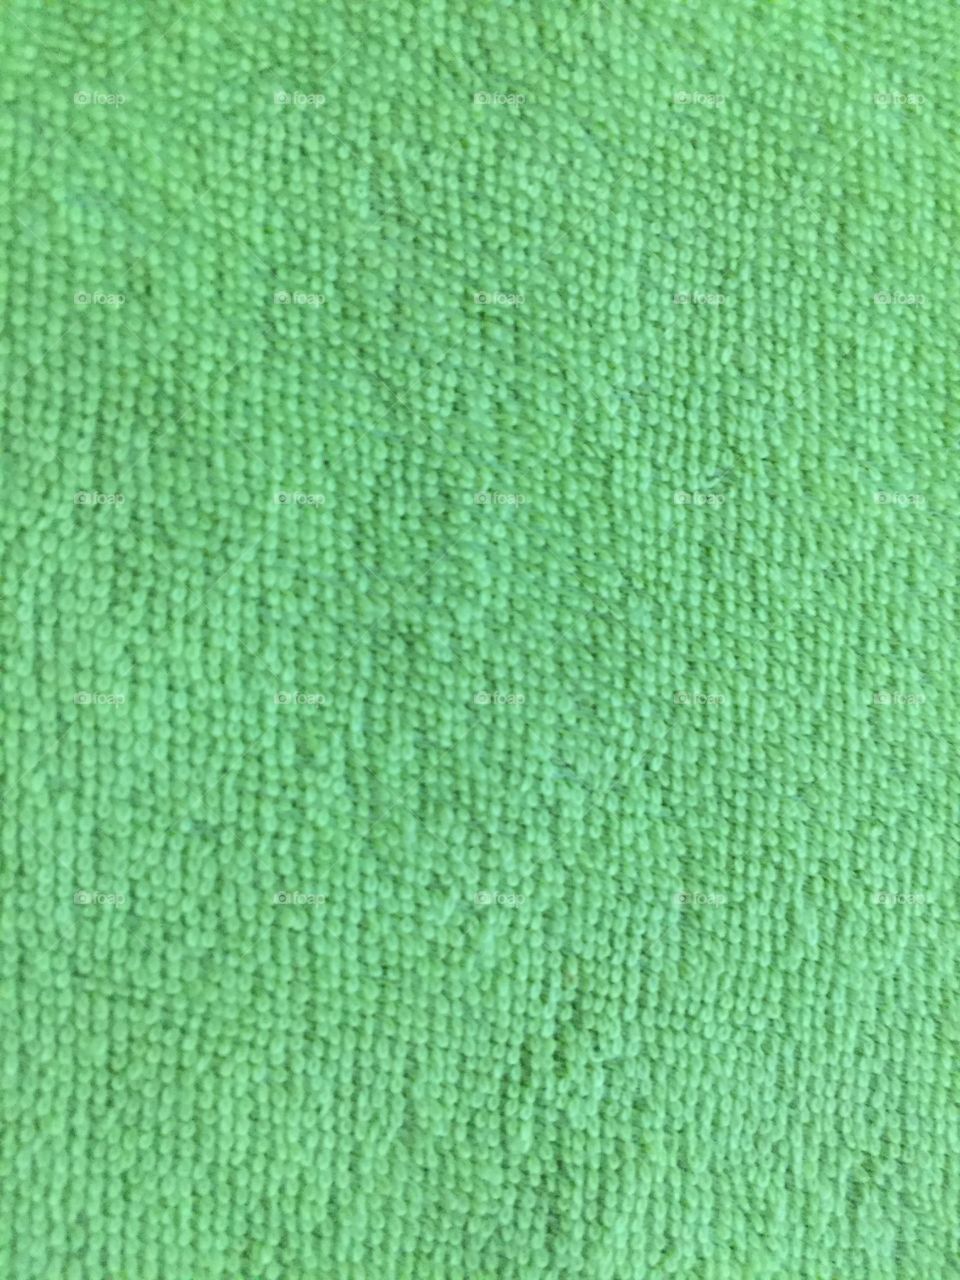 Green texture 